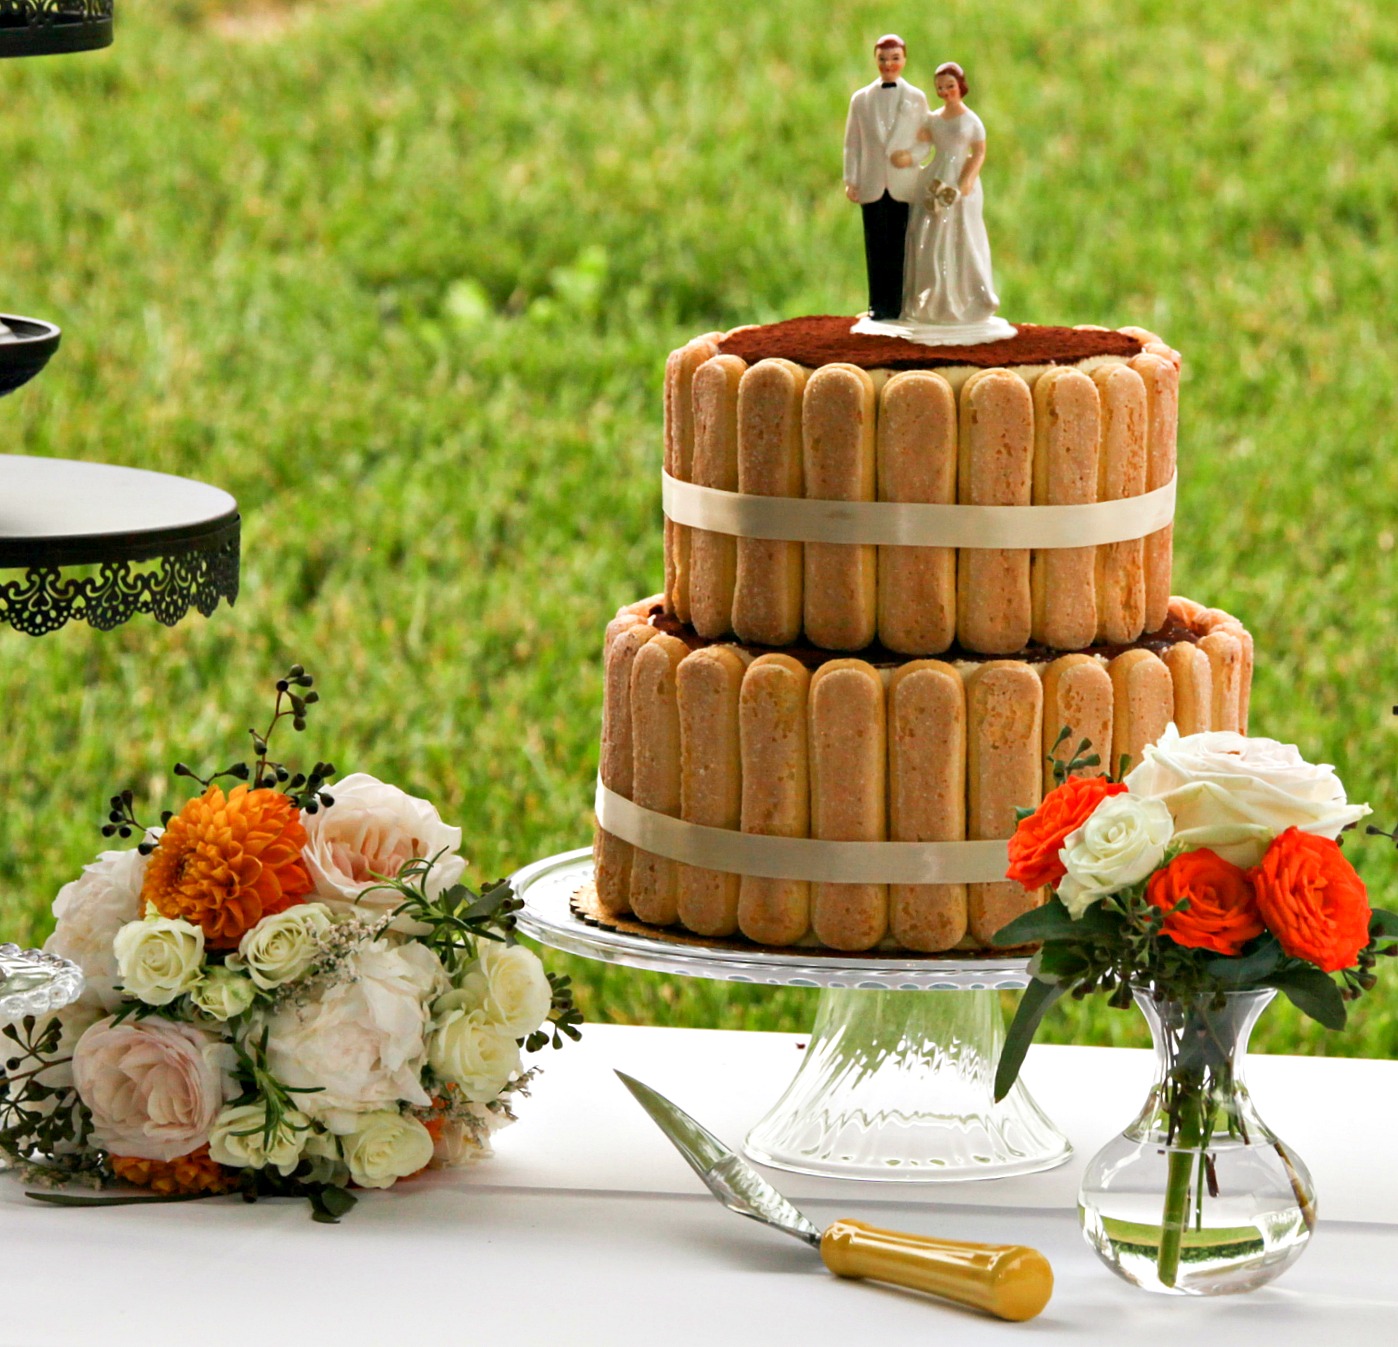 vinyard-weddint-cake-table.jpg